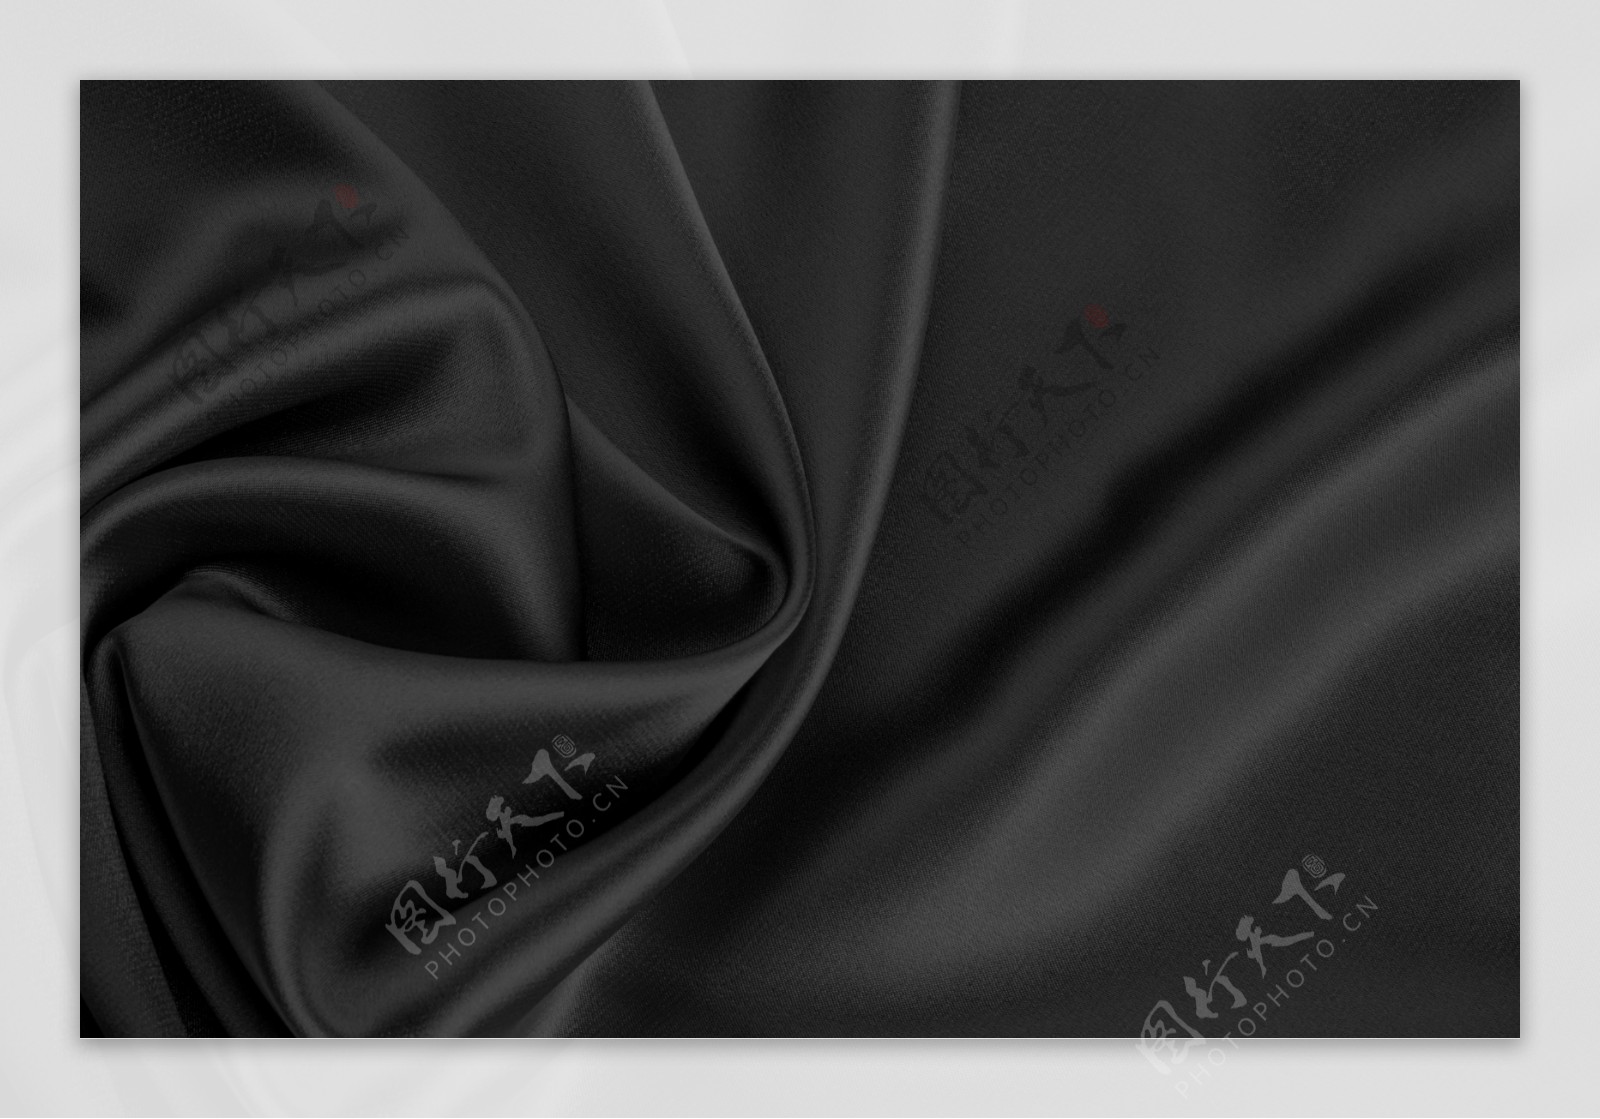 黑色丝绸背景图片